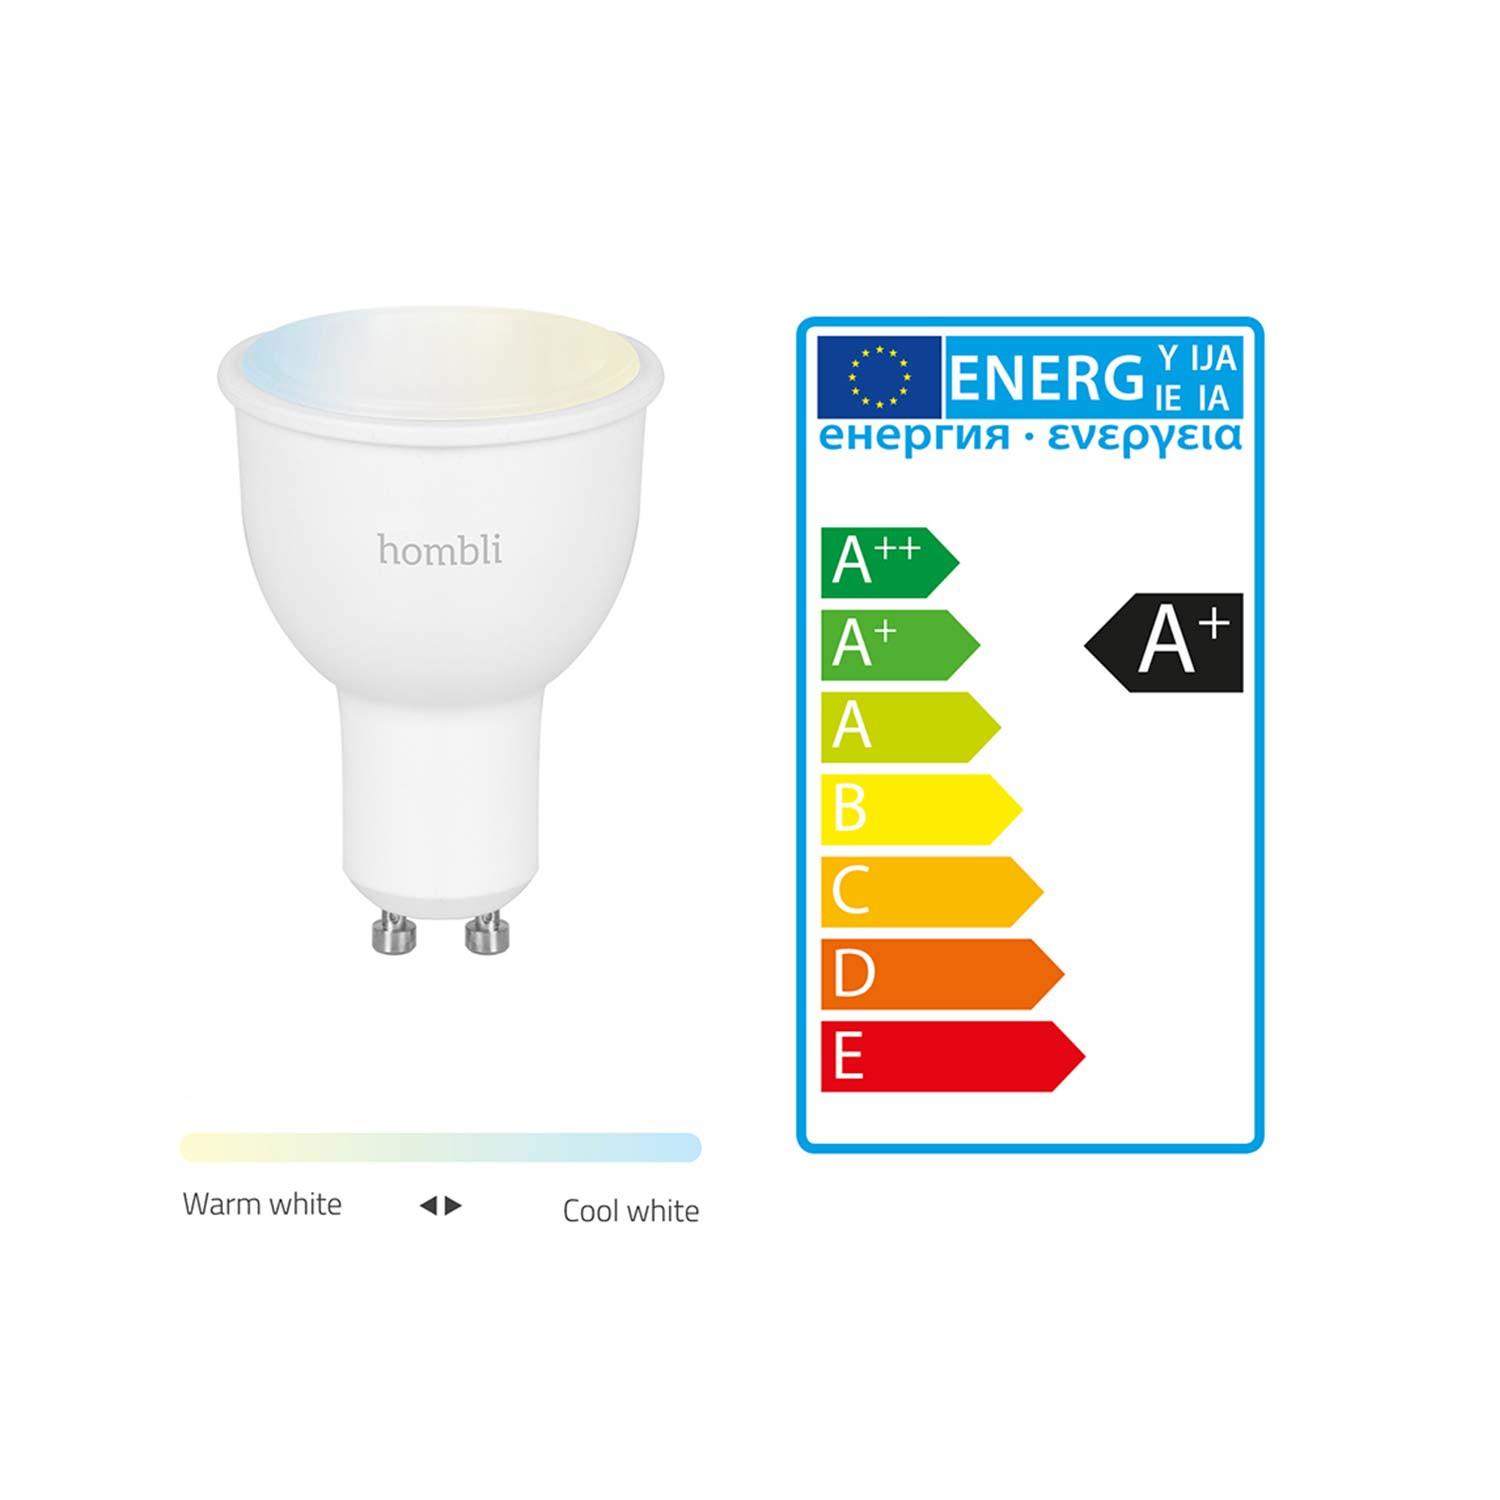 Hombli Smart Spot GU10 White-Lampe 2er-Set + gratis Smart Spot GU10 White 2er-Set - Energieeffizienz